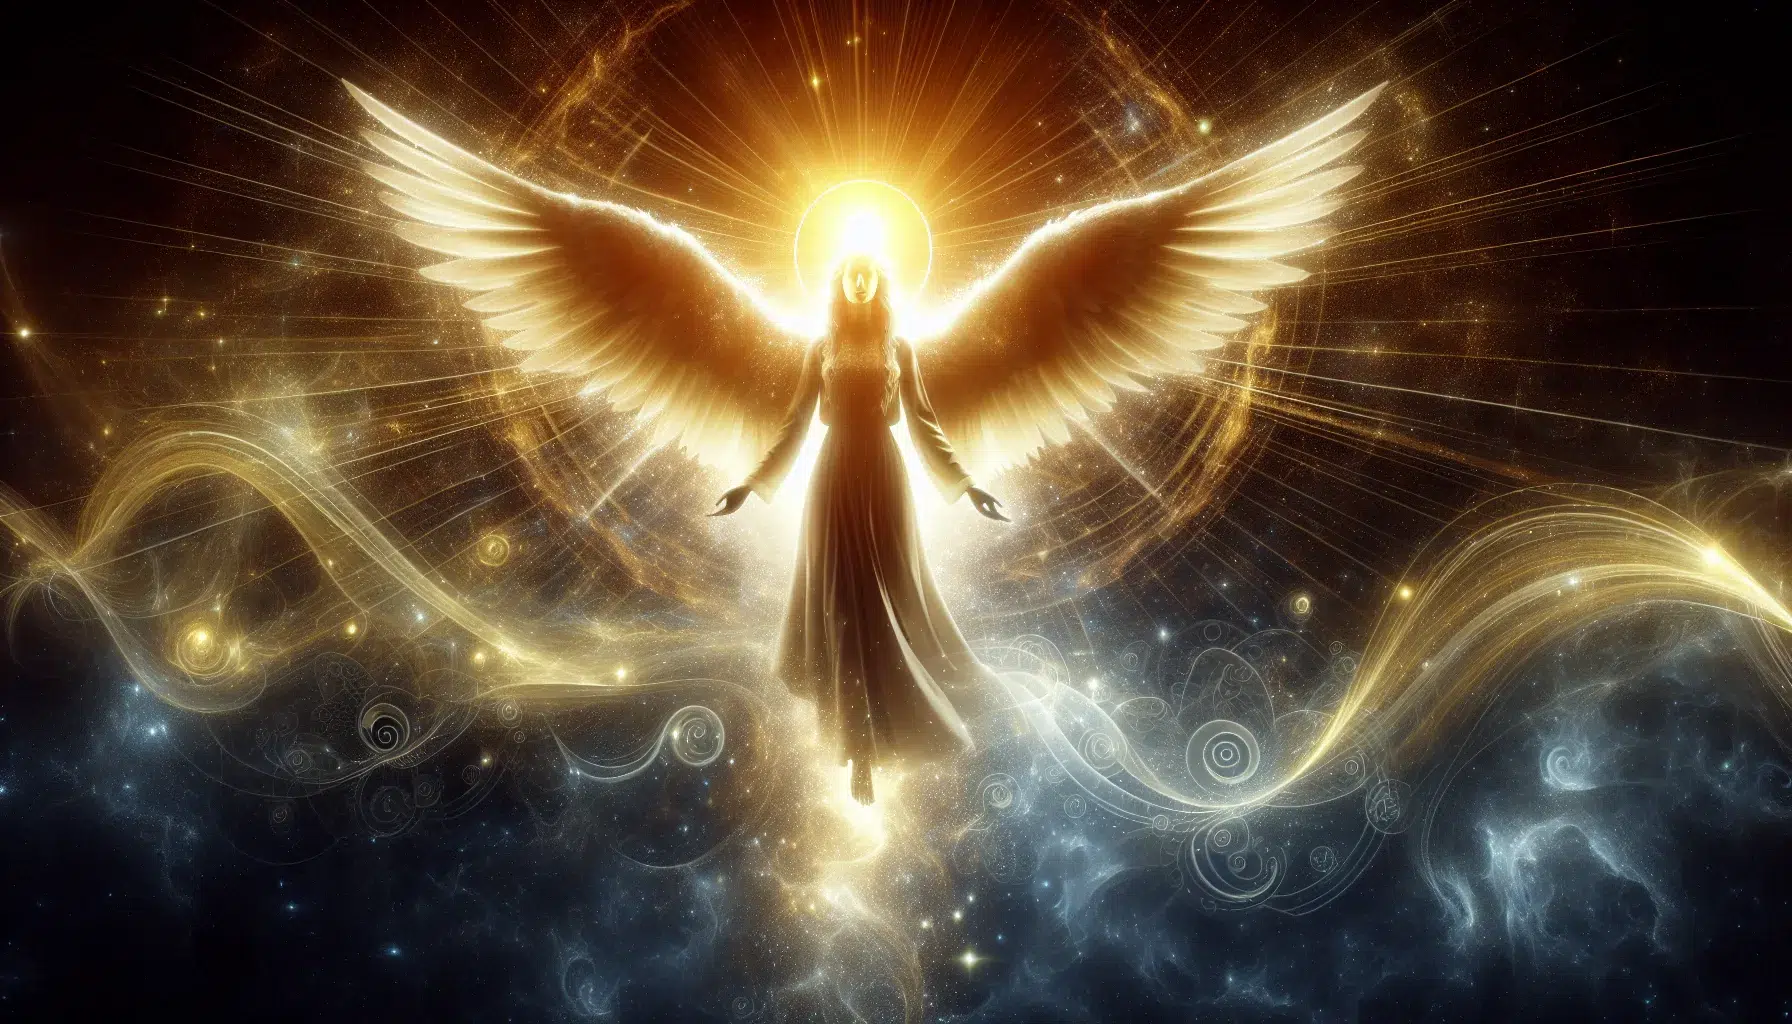 Imagen representativa de un ángel celestial con luz dorada brillante